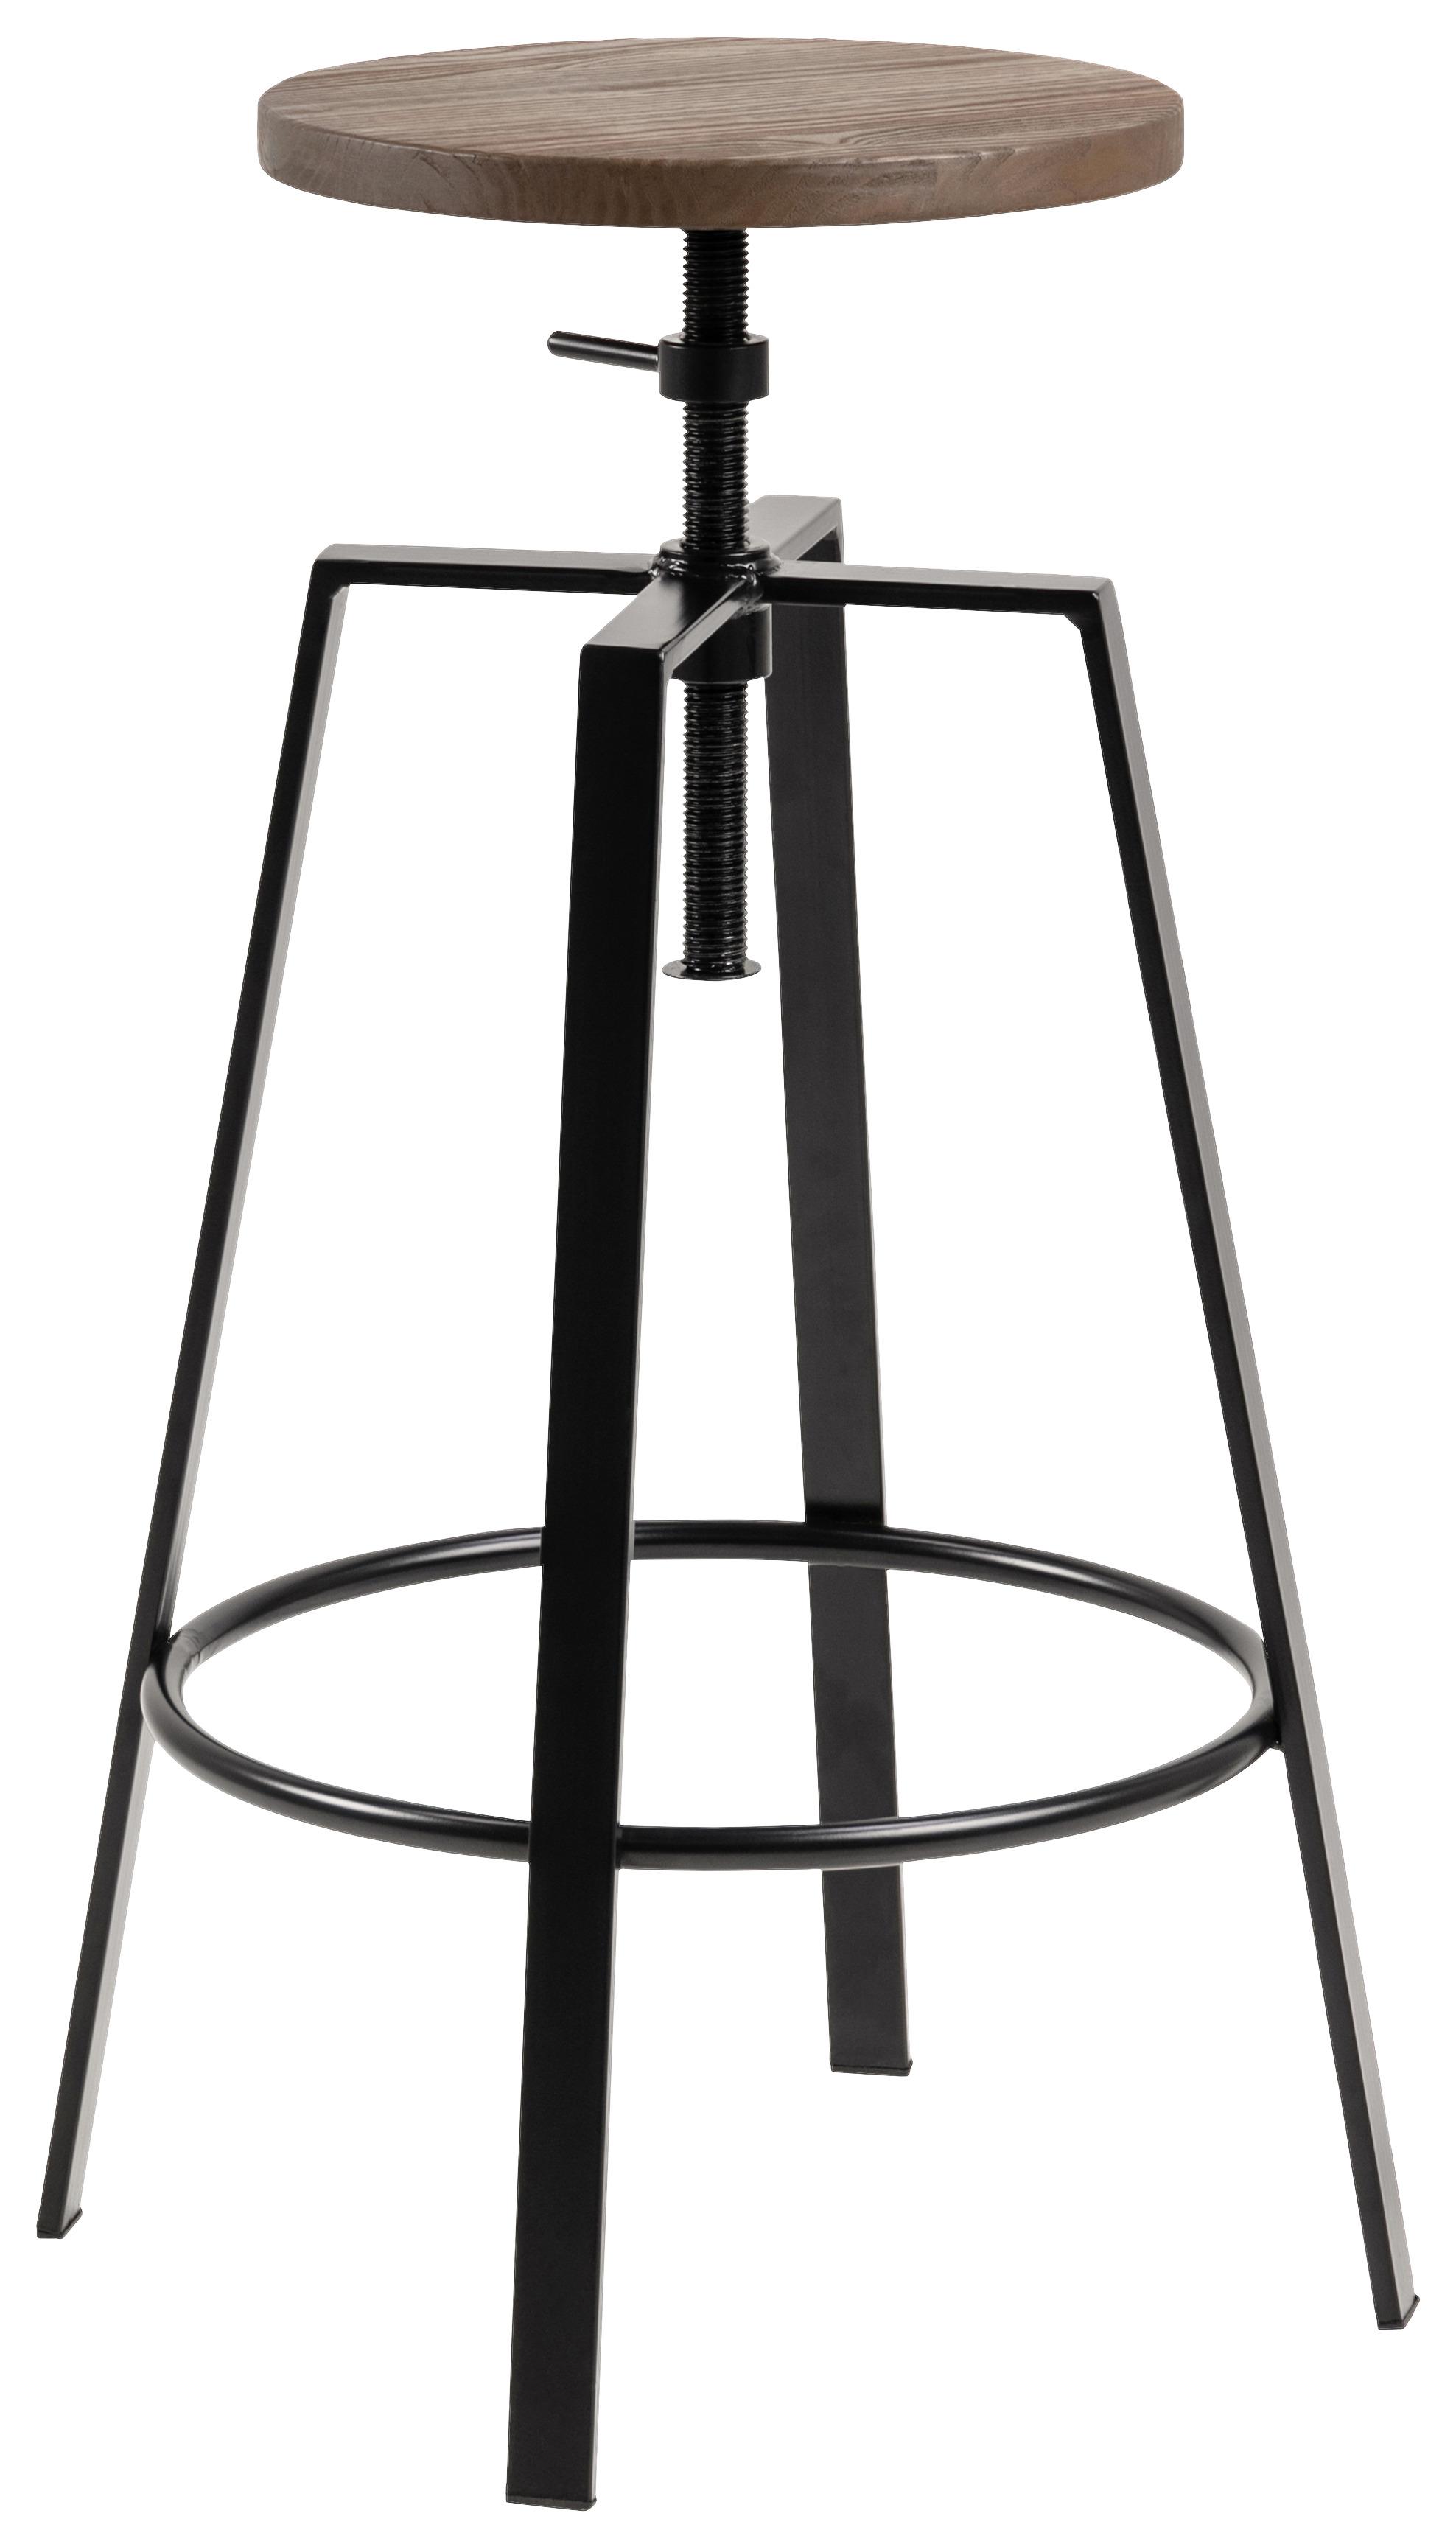 Barová Židle Goose-Trend-Drevo - černá/barvy jilmu, Trend, kov/dřevo (41/87/41cm) - Livetastic